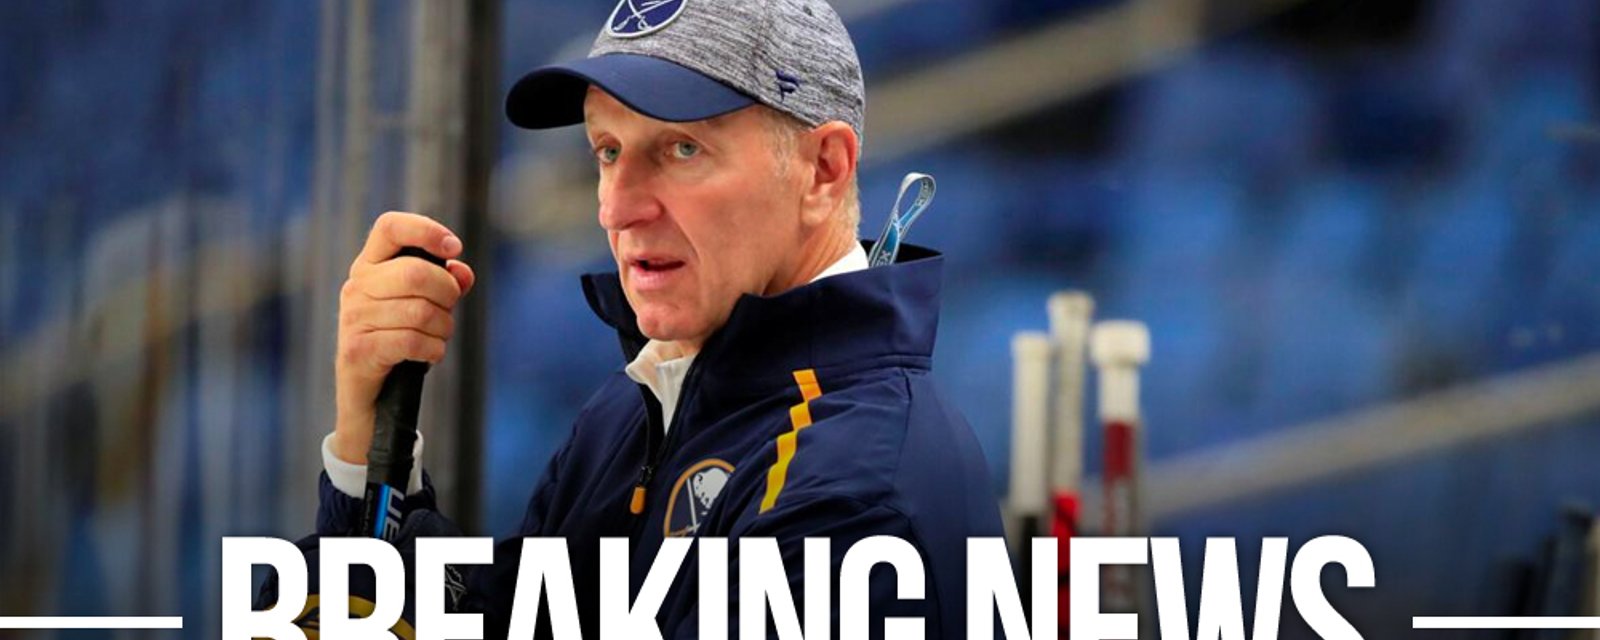 Sabres head coach Ralph Krueger leaves team after positive test result